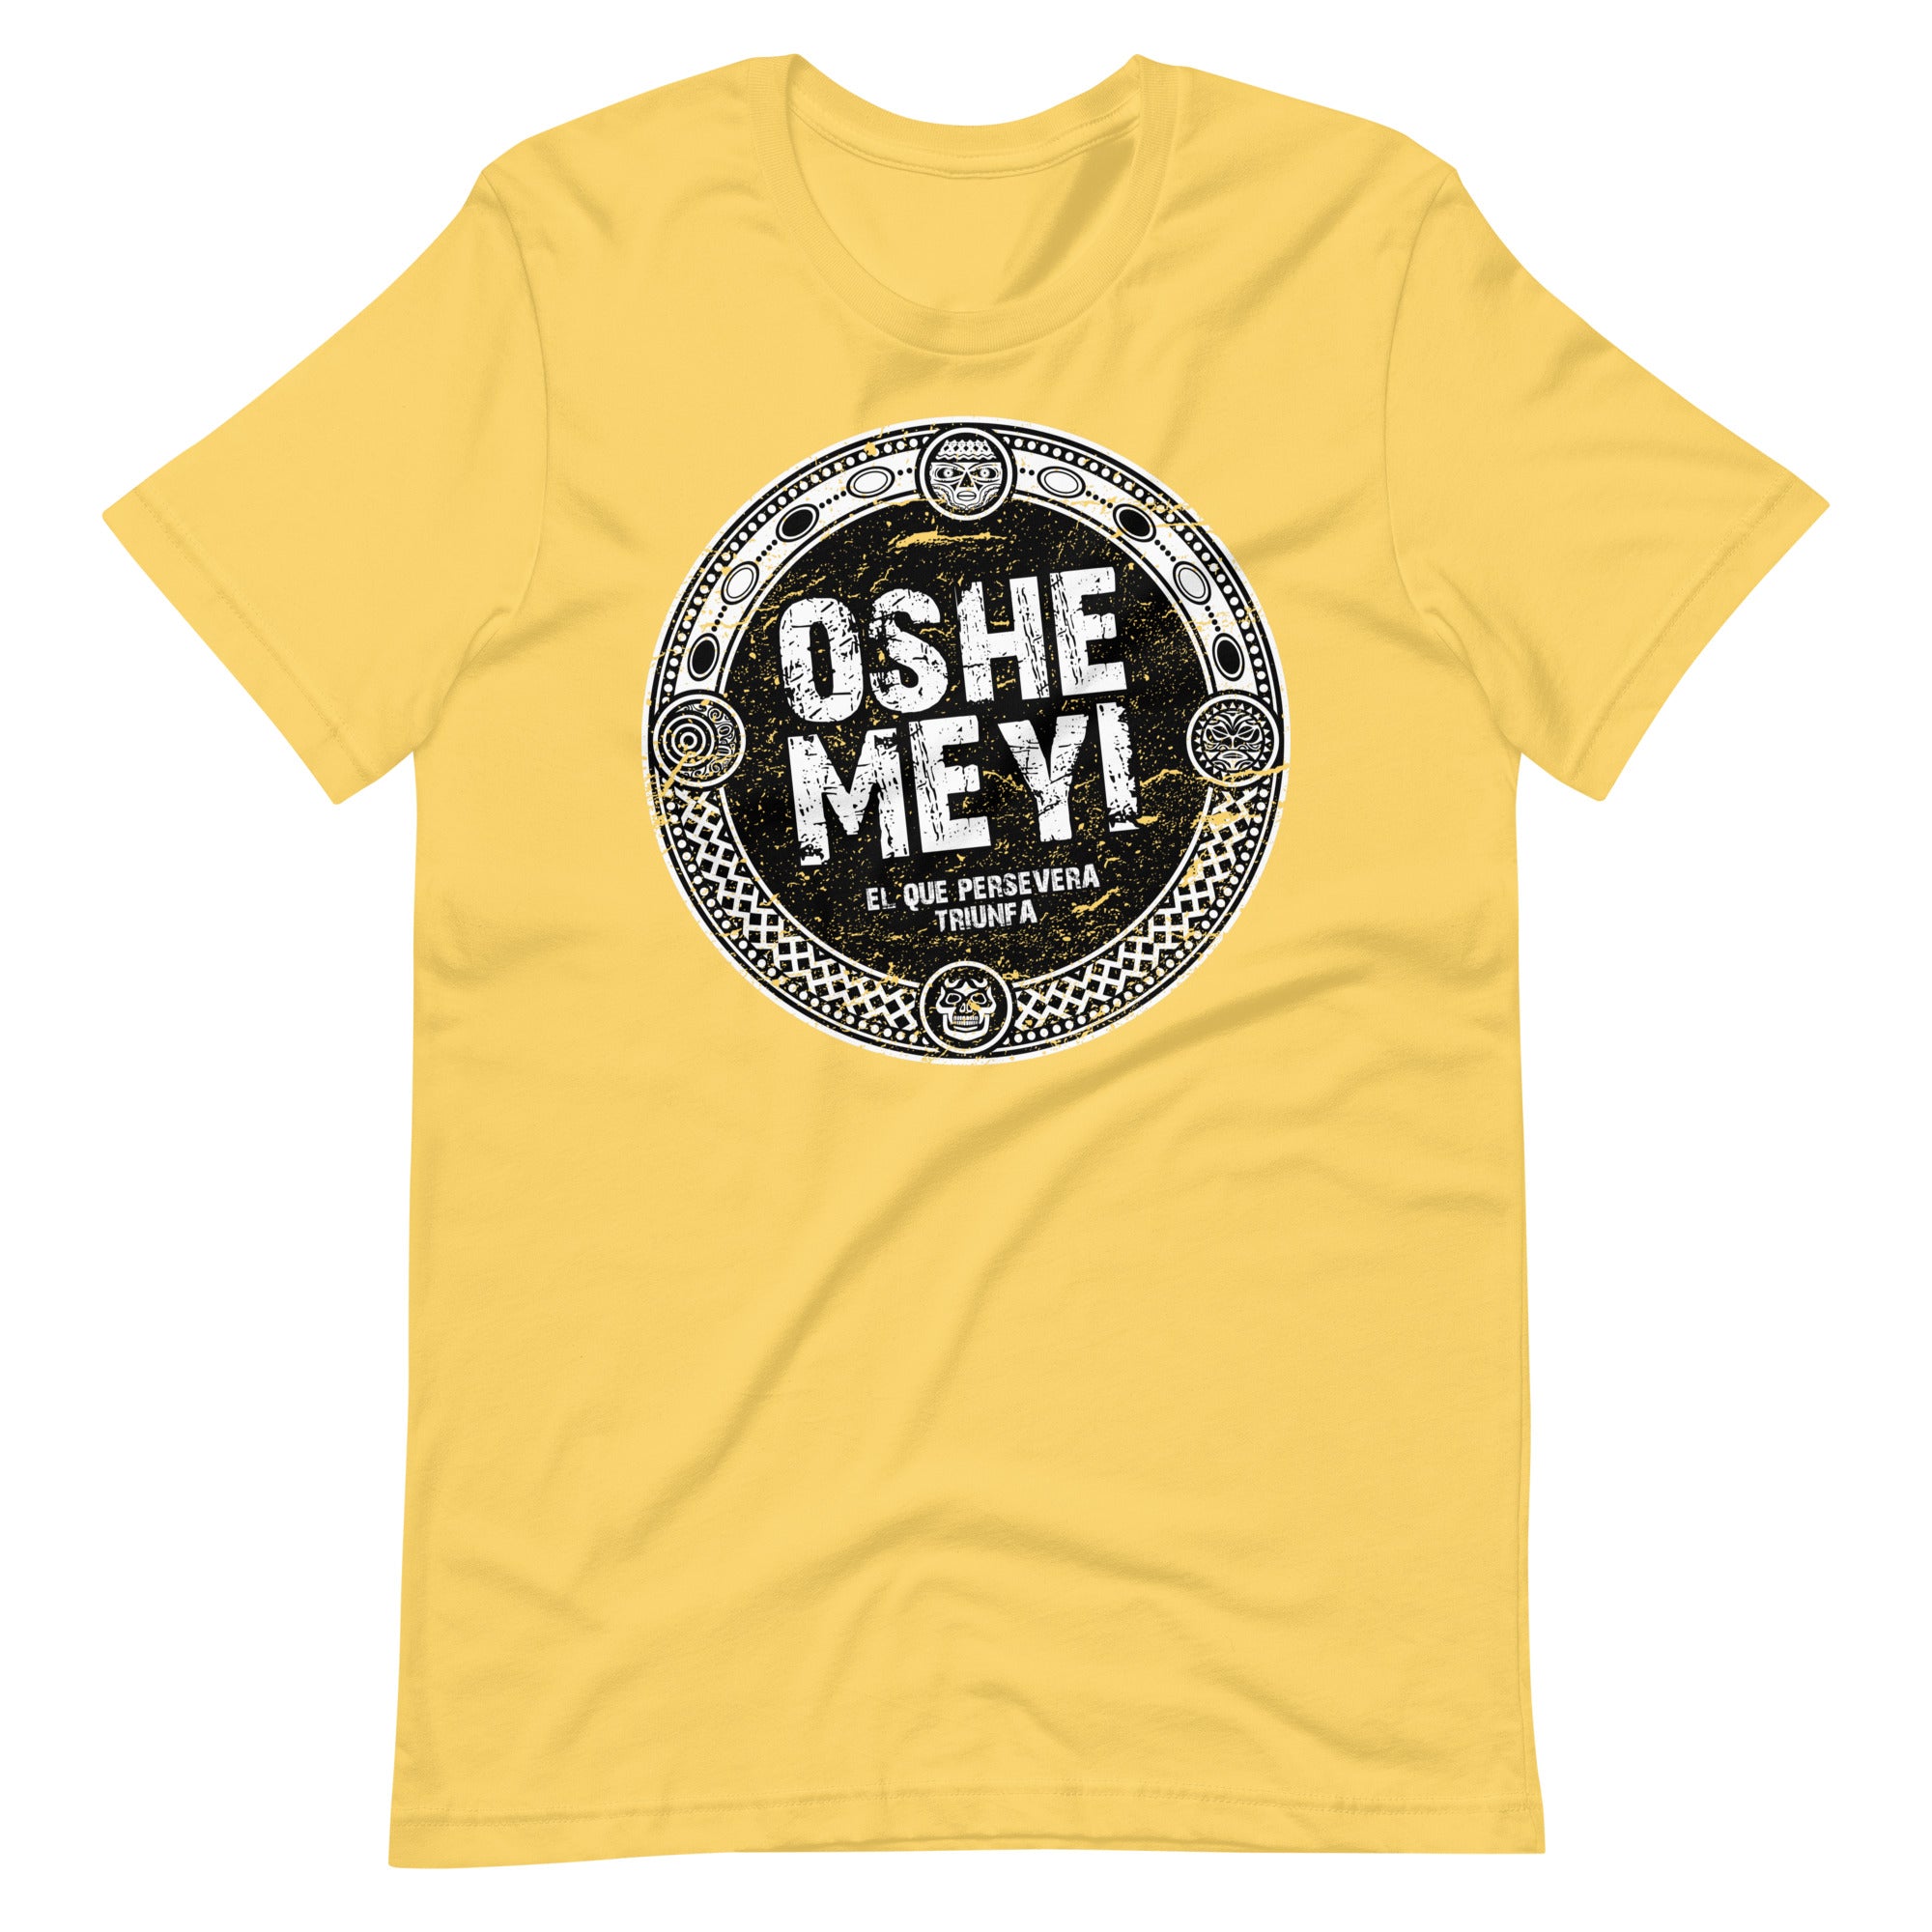 Oshe Meyi | Camiseta de manga corta unisex